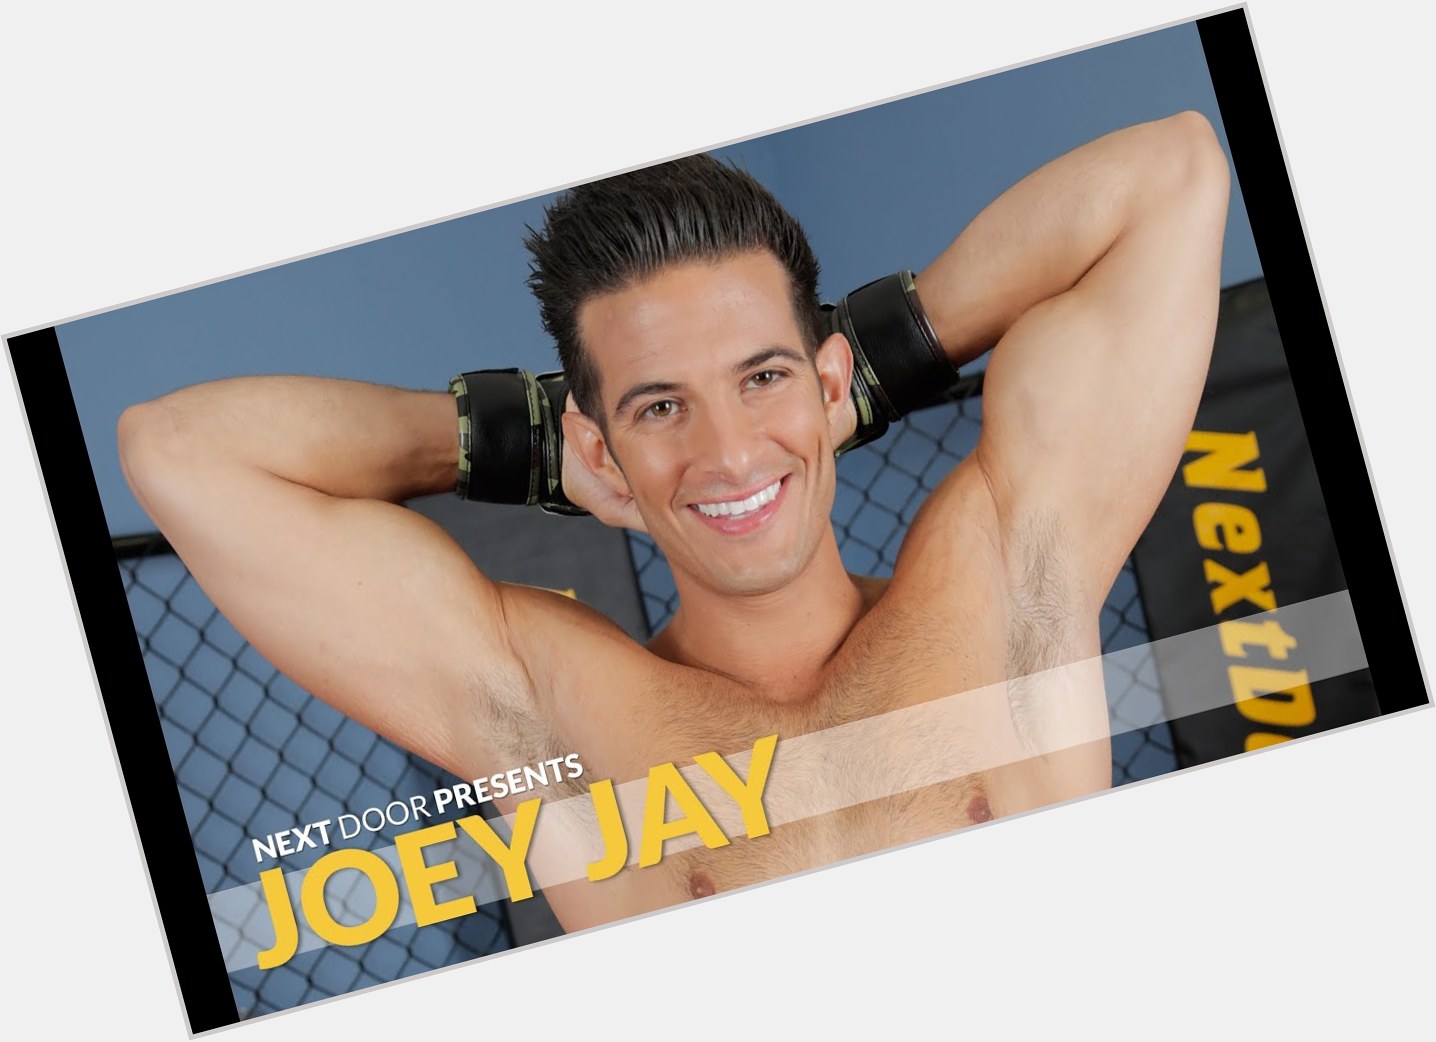 Joey Jay dark brown hair & hairstyles Athletic body, 